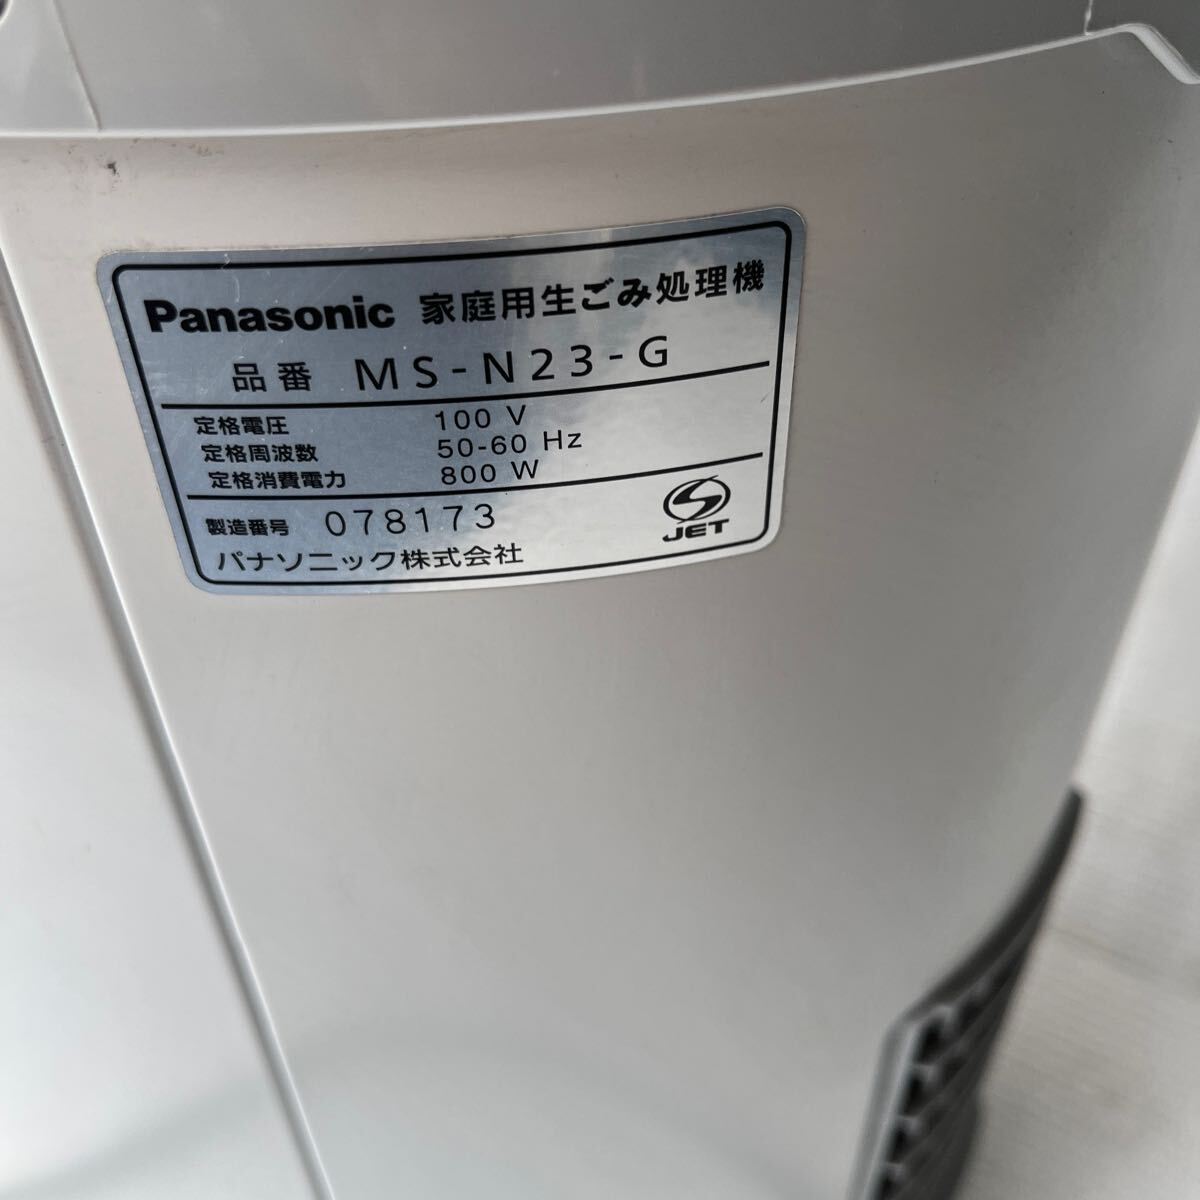  Panasonic для бытового использования переработчик отходов MS-N23-G 2016 год производства 